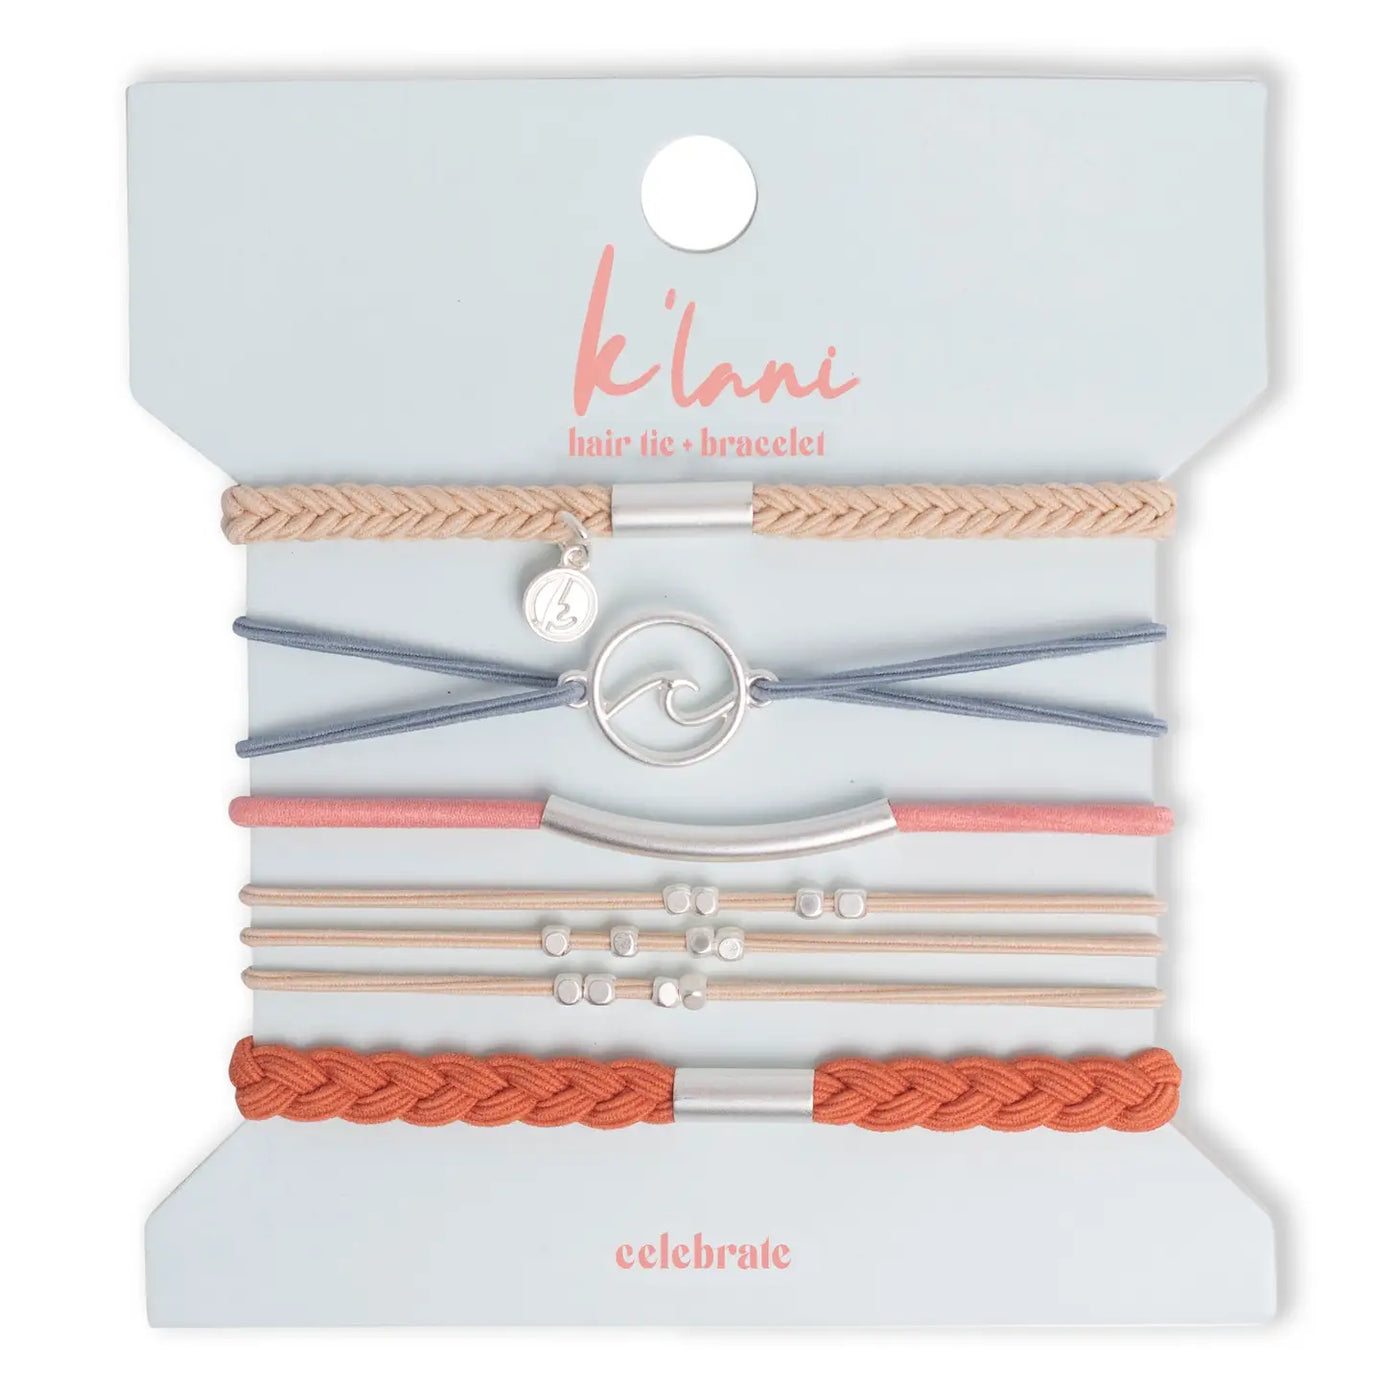 K'lani Hair Tie Bracelet- Celebrate